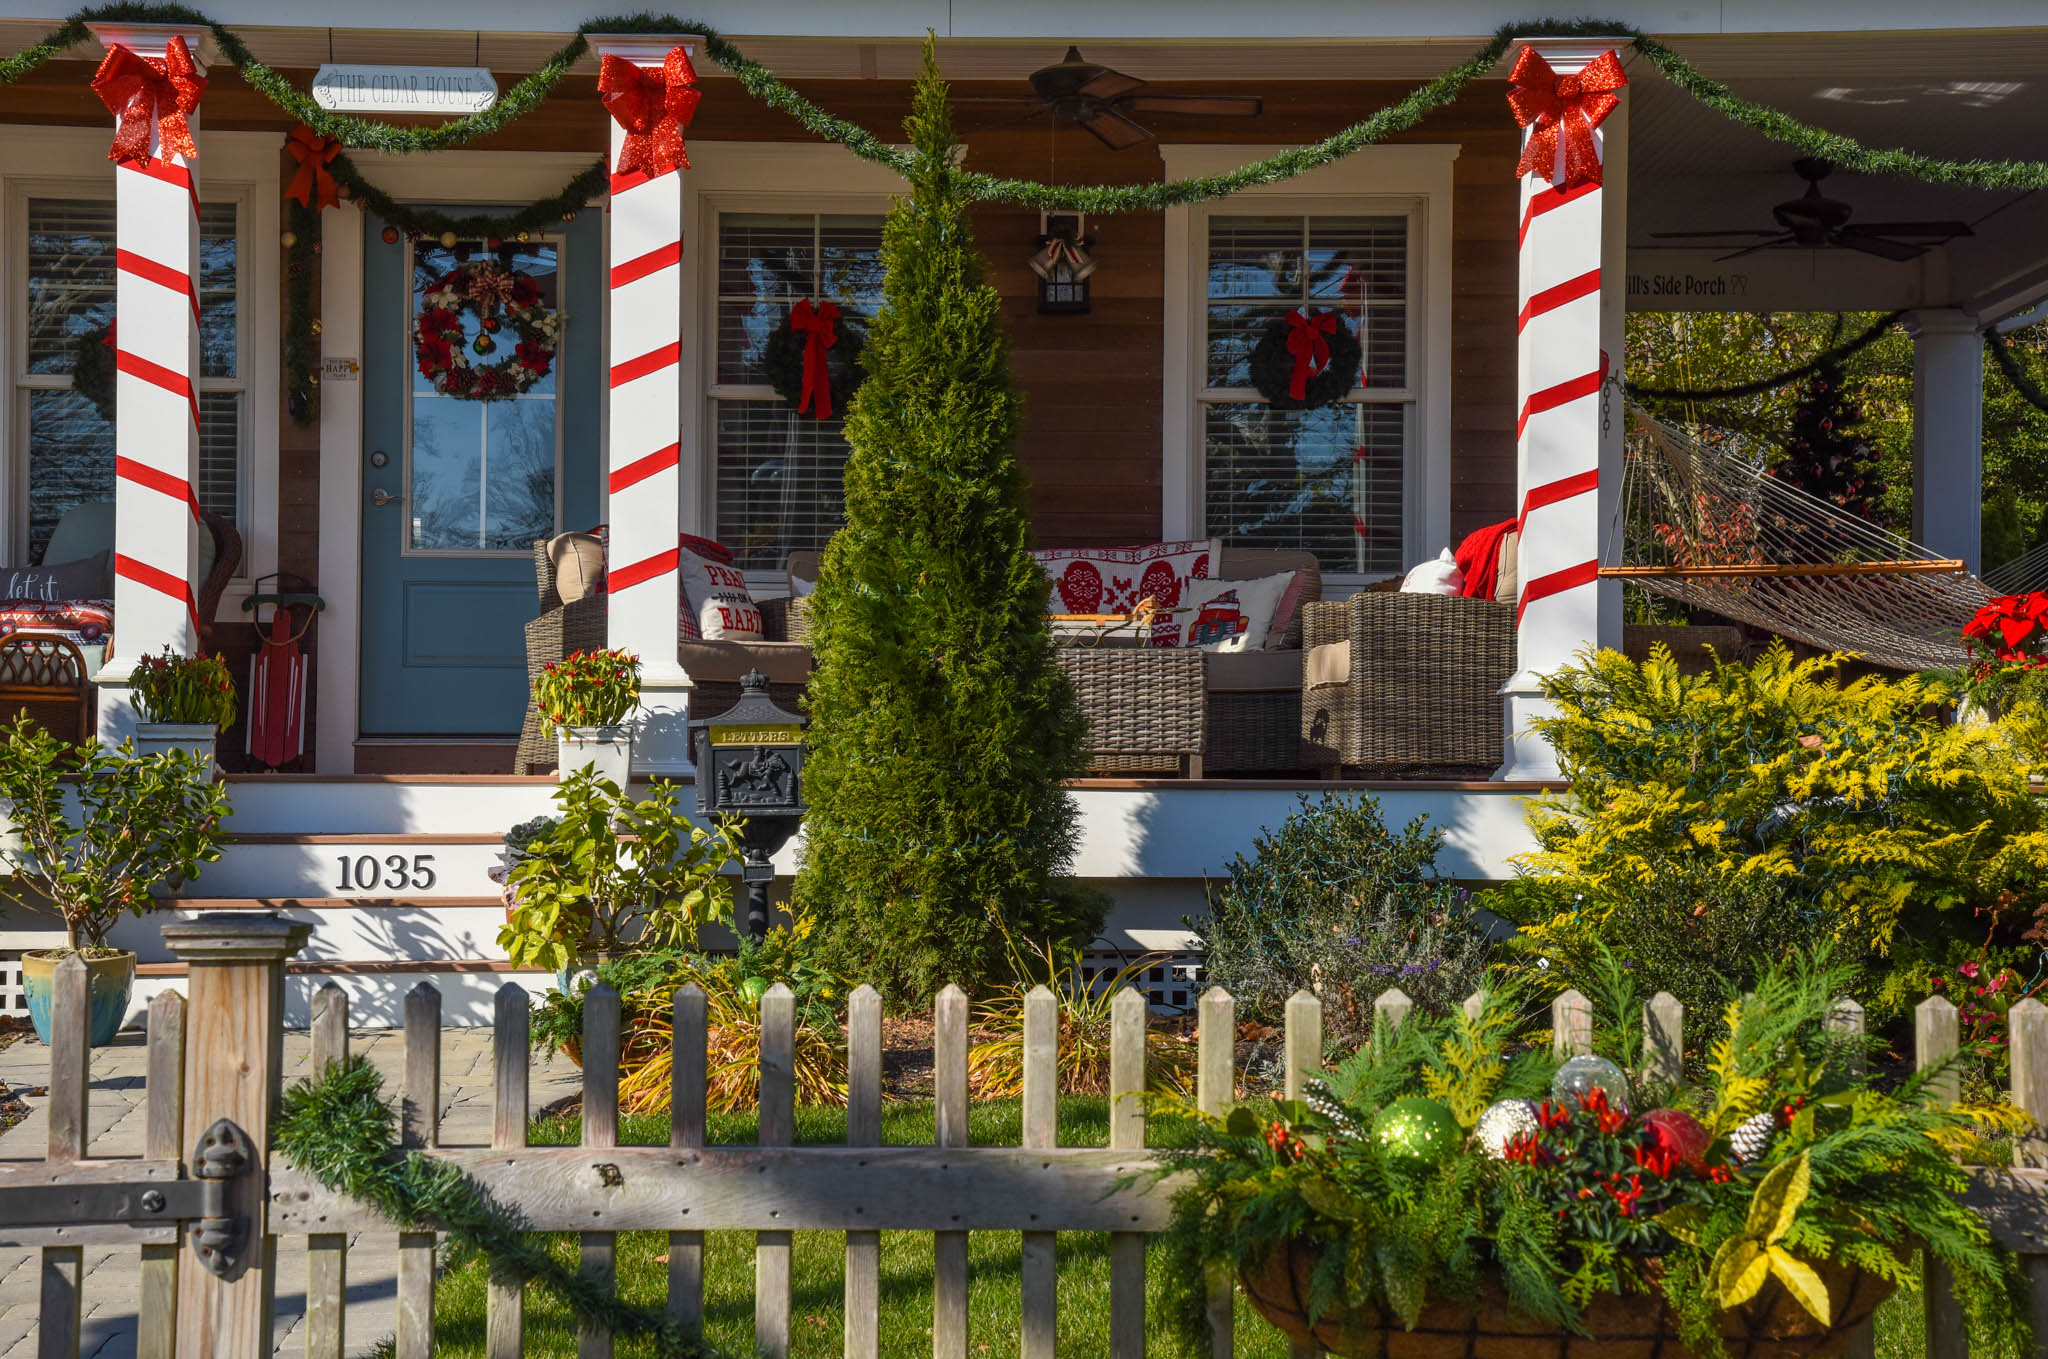 House on Washington Street showing Holiday Spirit